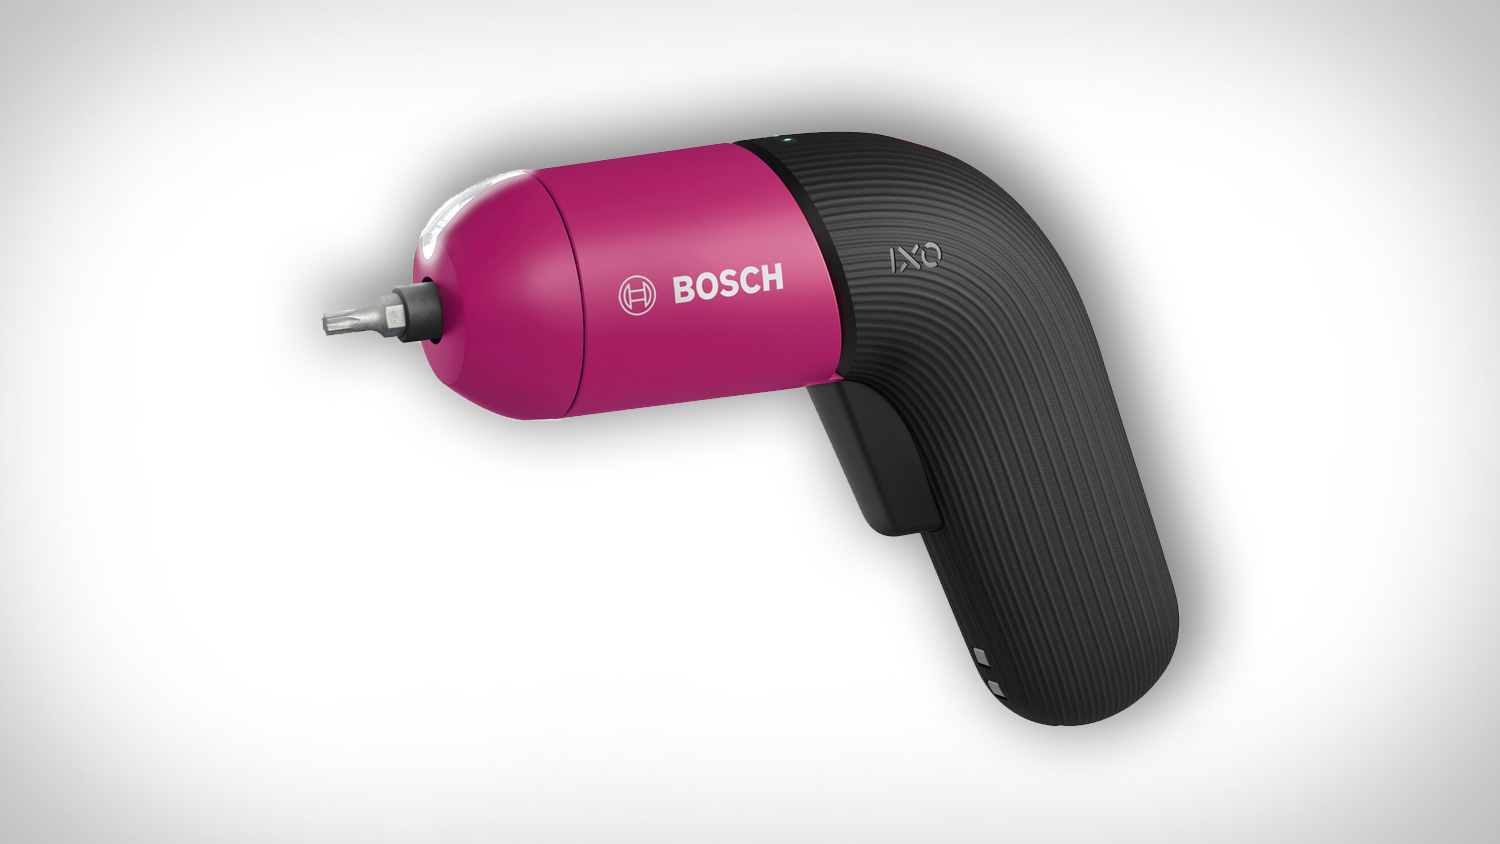 Bosch IXO Colour Edition